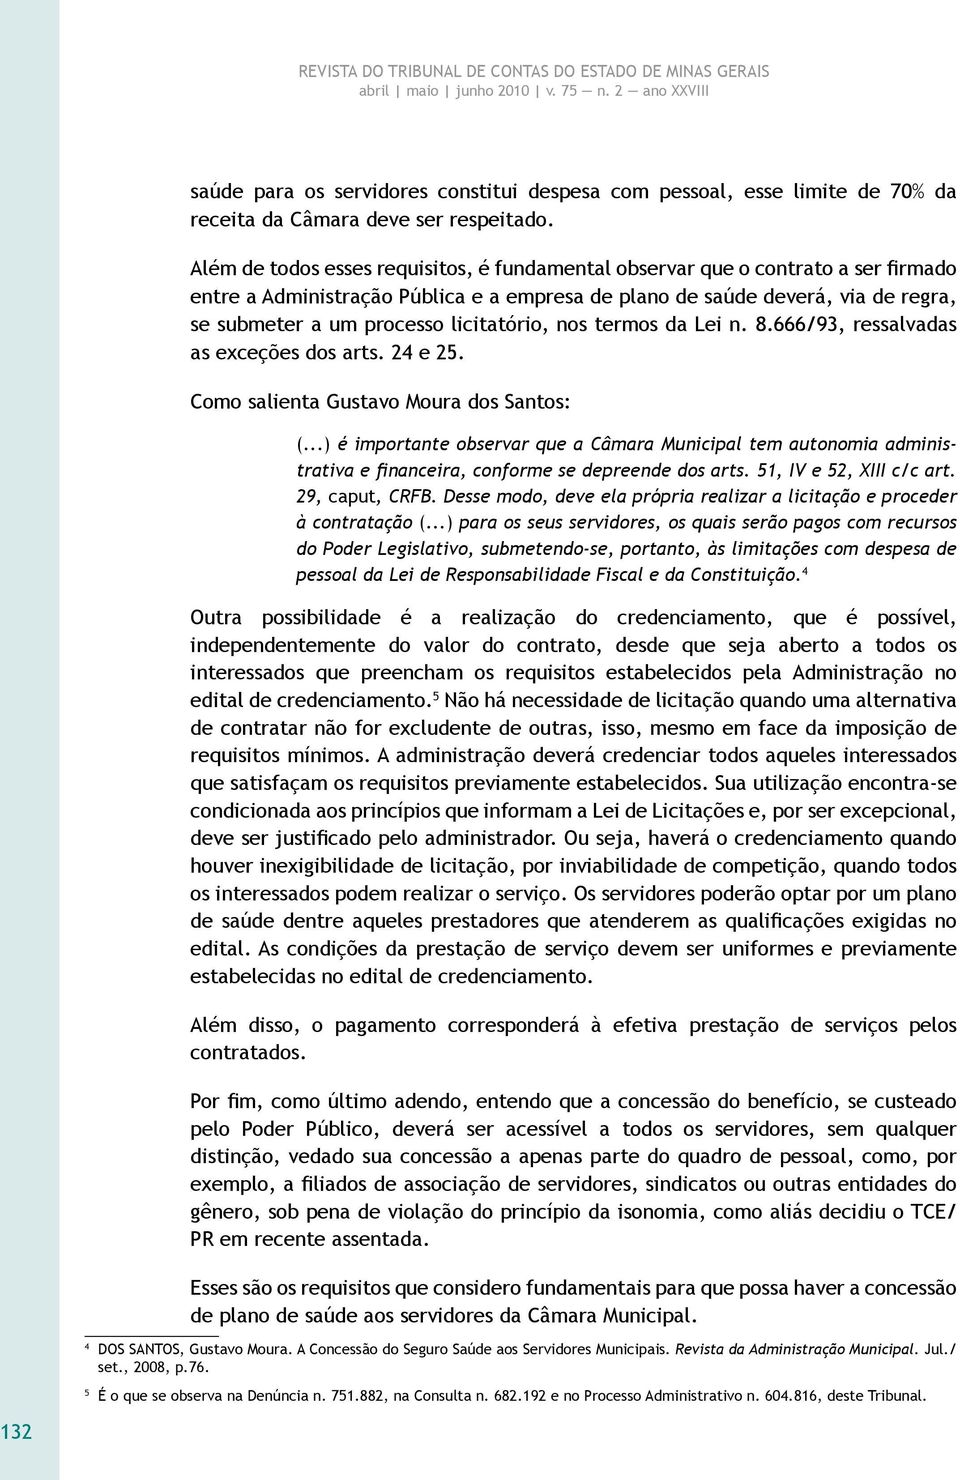 licitatório, nos termos da Lei n. 8.666/93, ressalvadas as exceções dos arts. 24 e 25. Como salienta Gustavo Moura dos Santos: (.